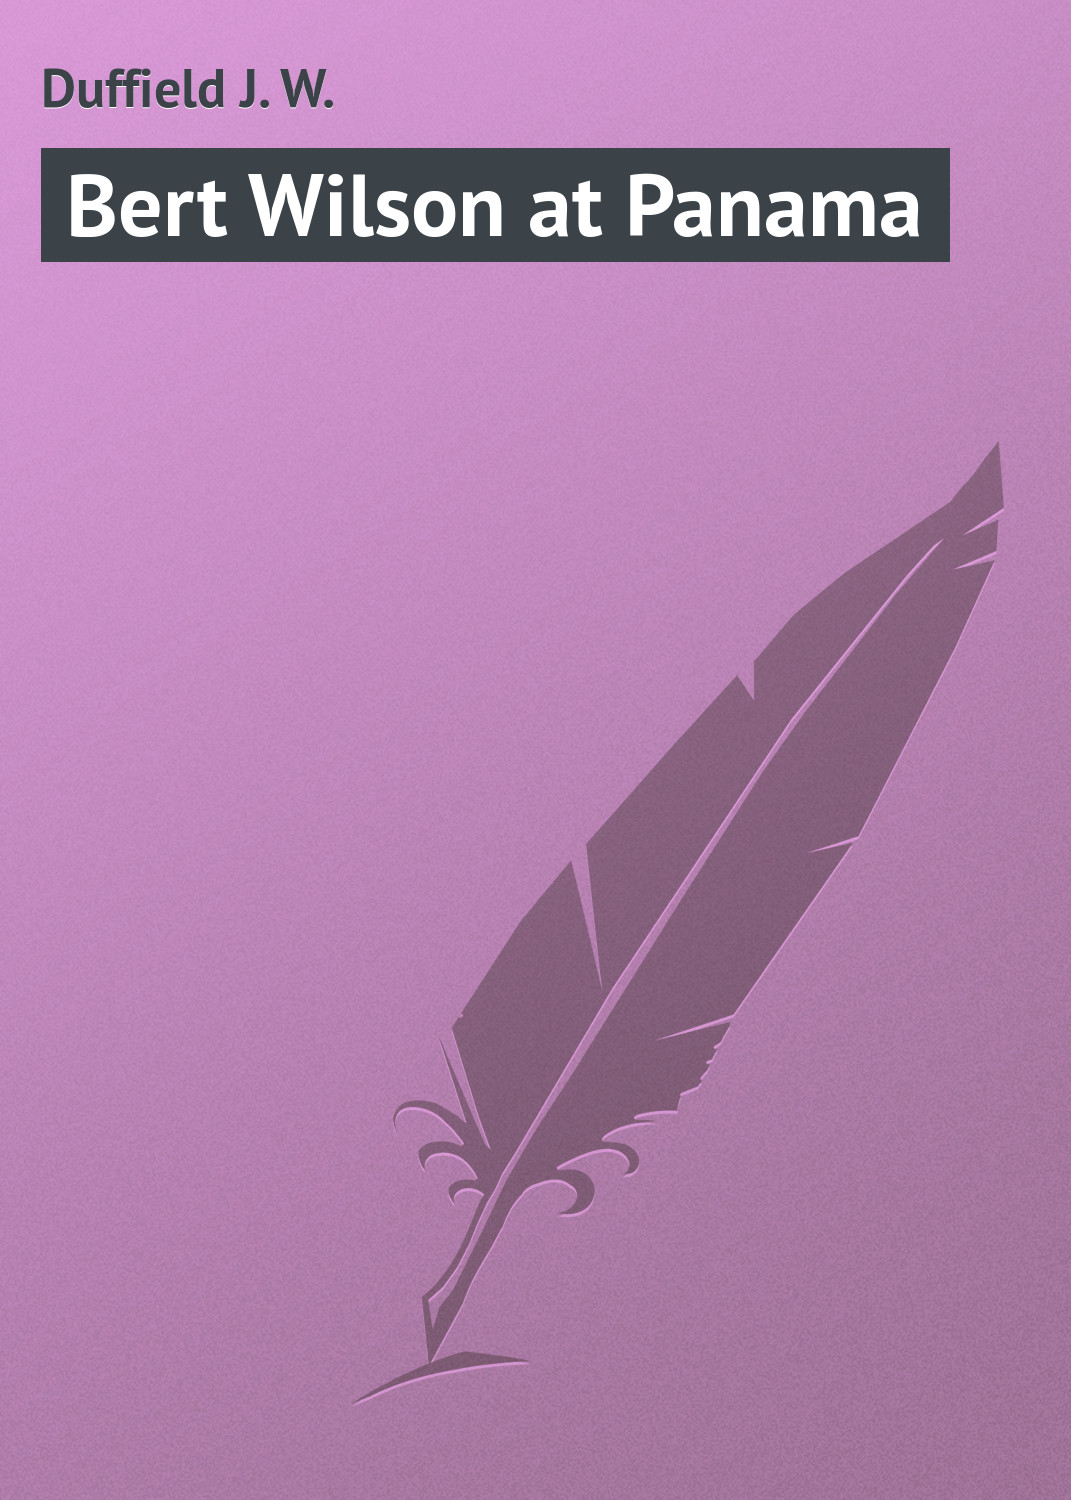 Книга Bert Wilson at Panama из серии , созданная J. Duffield, может относится к жанру Приключения: прочее, Зарубежная классика. Стоимость электронной книги Bert Wilson at Panama с идентификатором 23164859 составляет 5.99 руб.